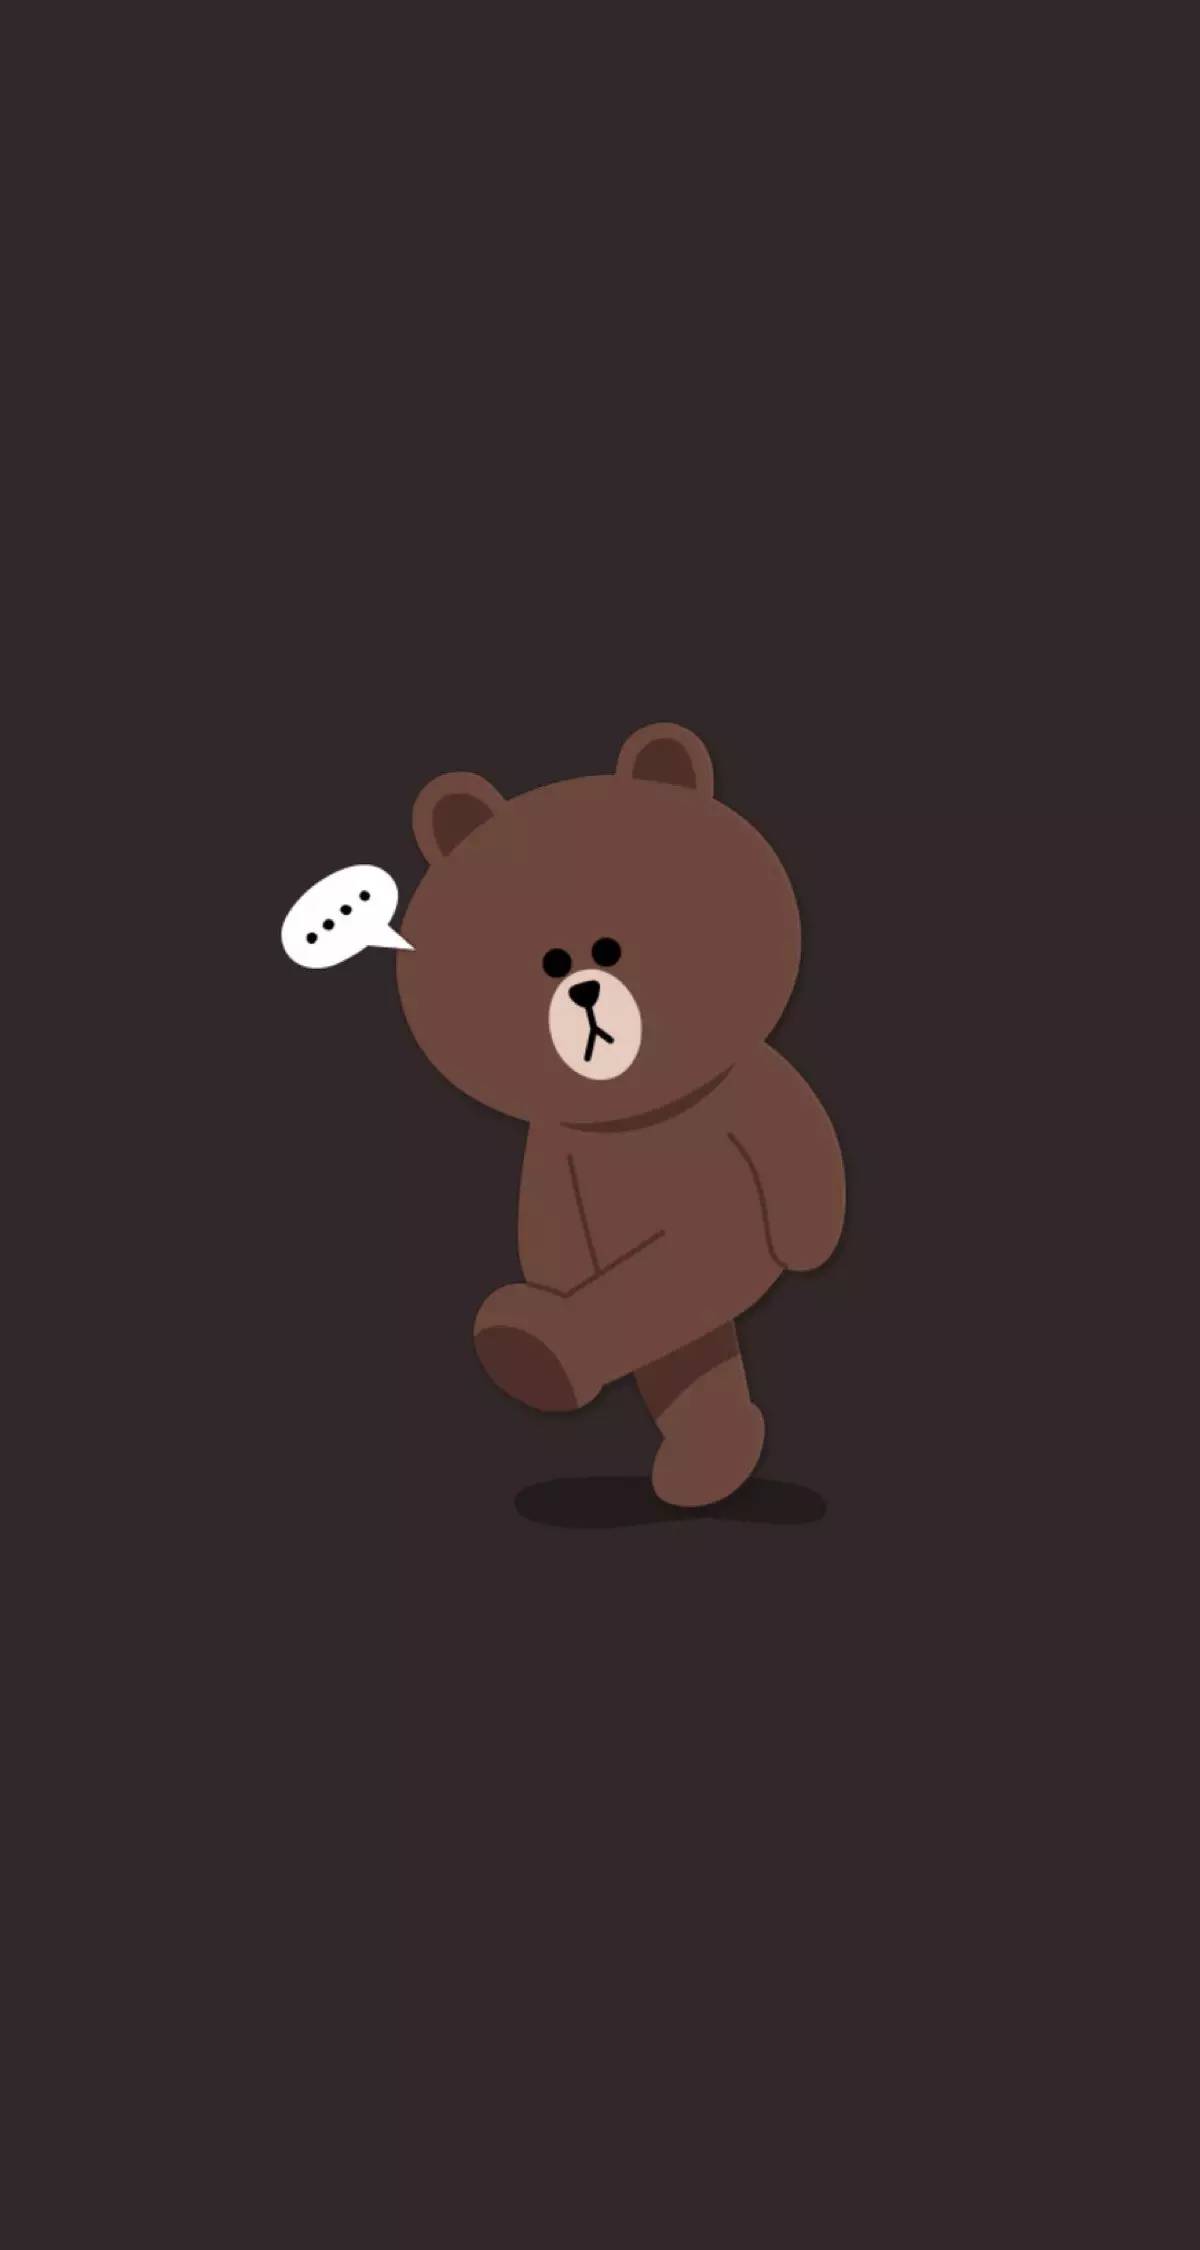 A cute brown bear with speech bubble - Teddy bear